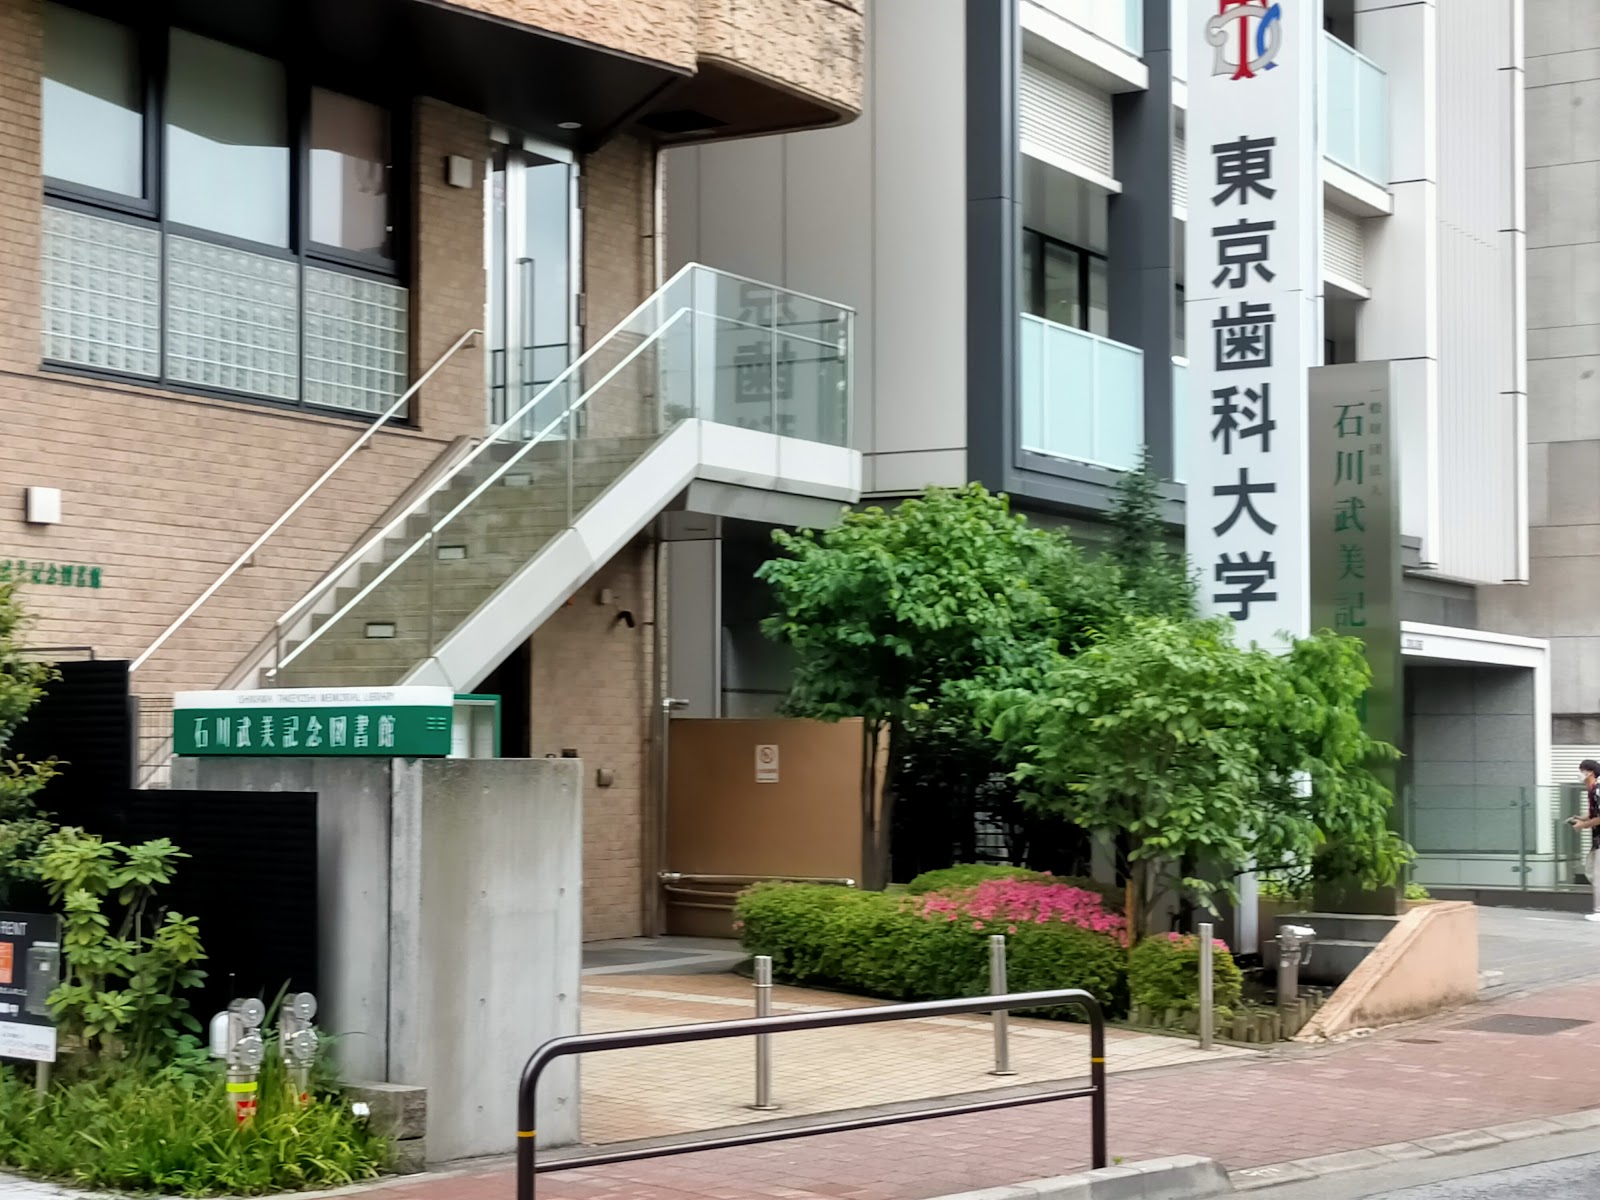 一般財団法人 石川武美記念図書館の写真